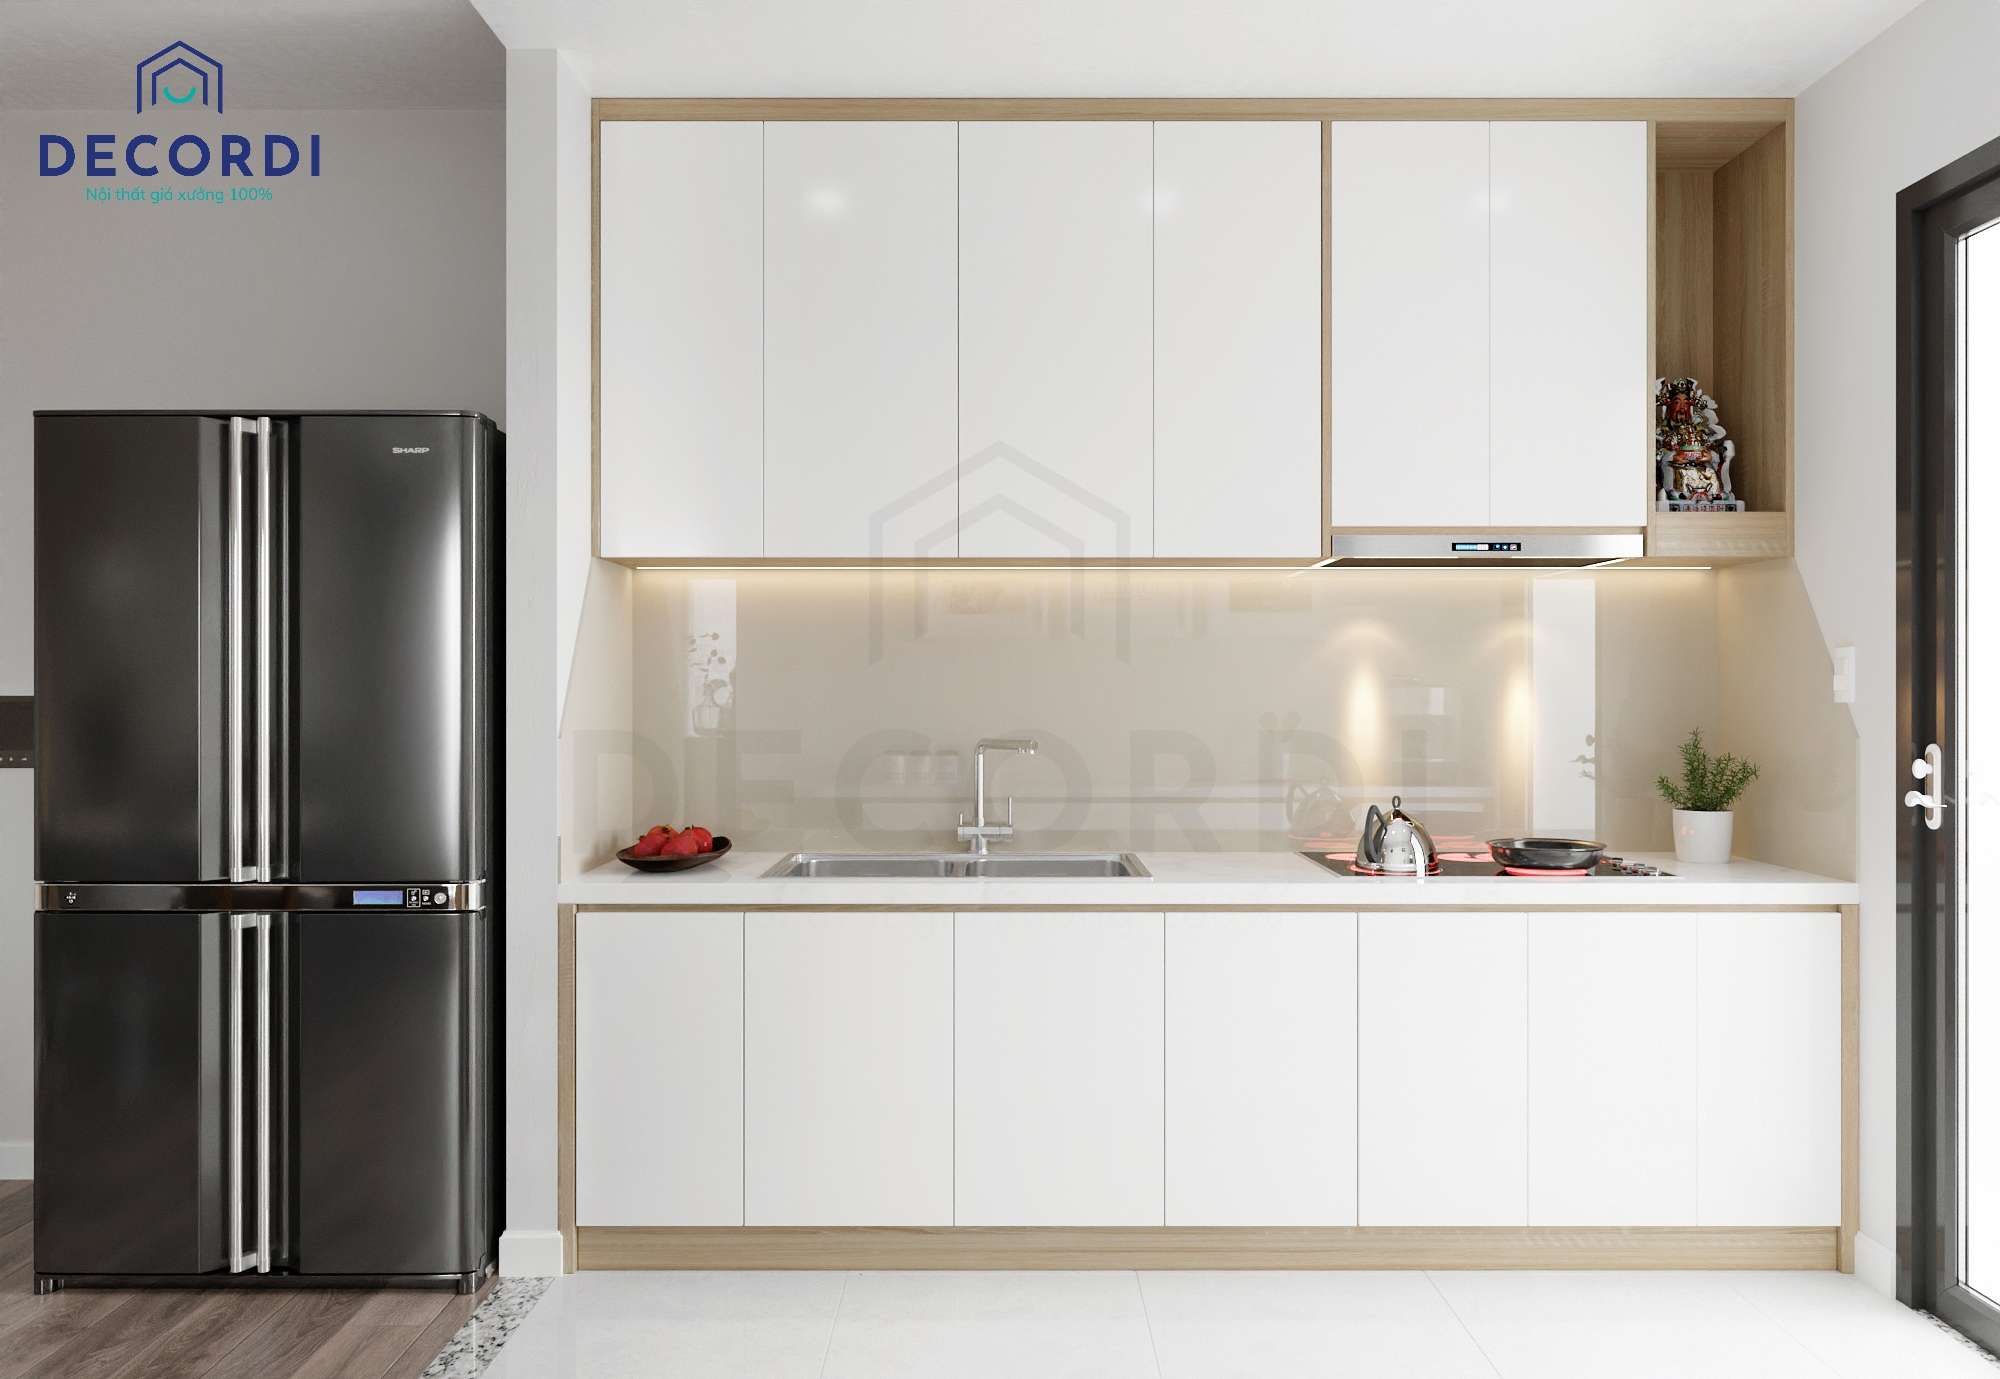 Thiết kế nội thất phòng bếp chung cư với tủ bếp chữ I nhỏ gọn, hiện đại tối ưu diện tích 